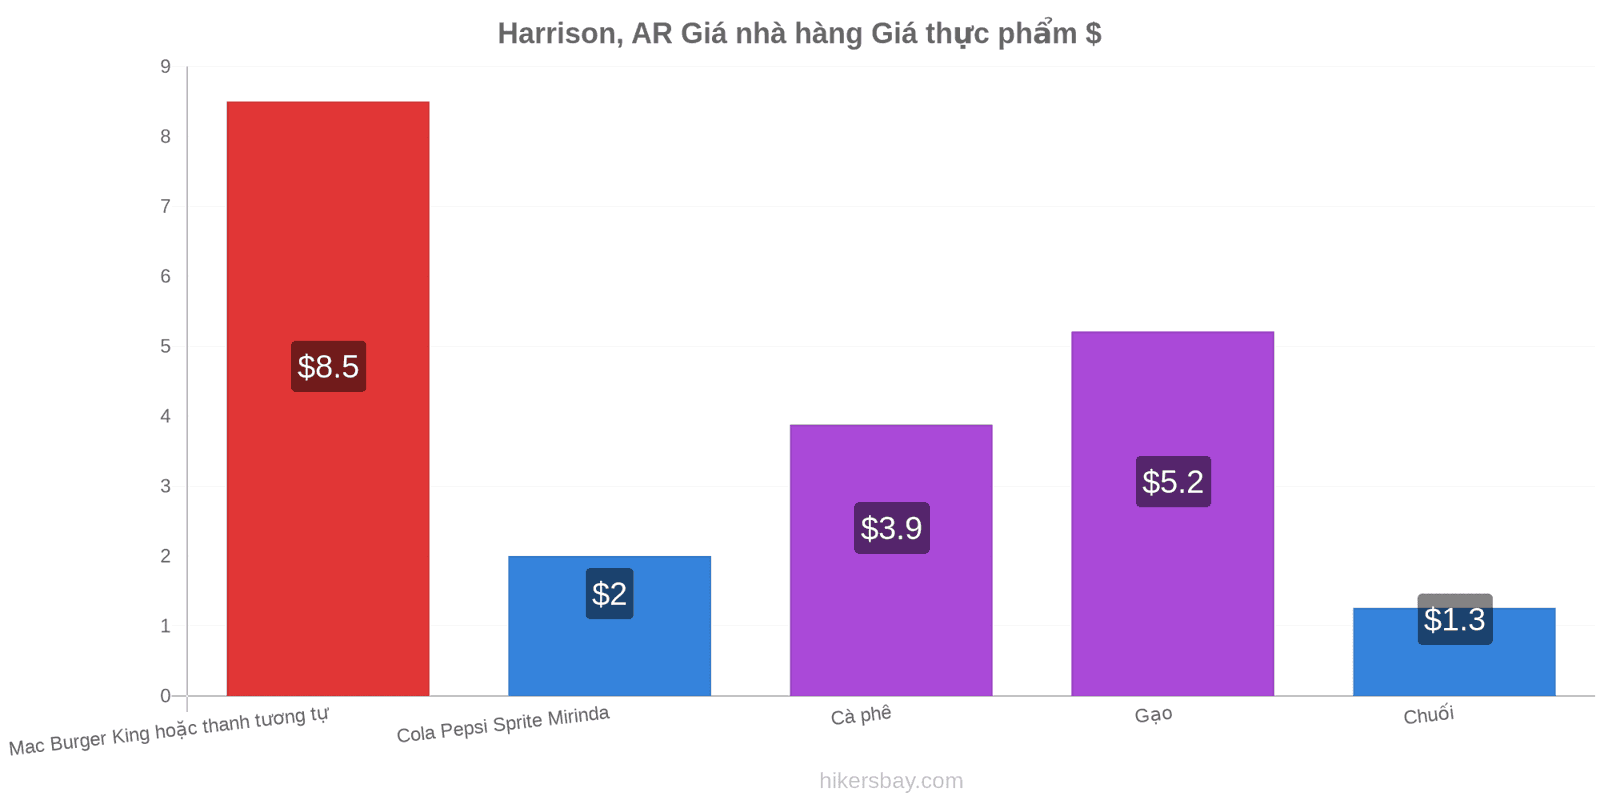 Harrison, AR thay đổi giá cả hikersbay.com